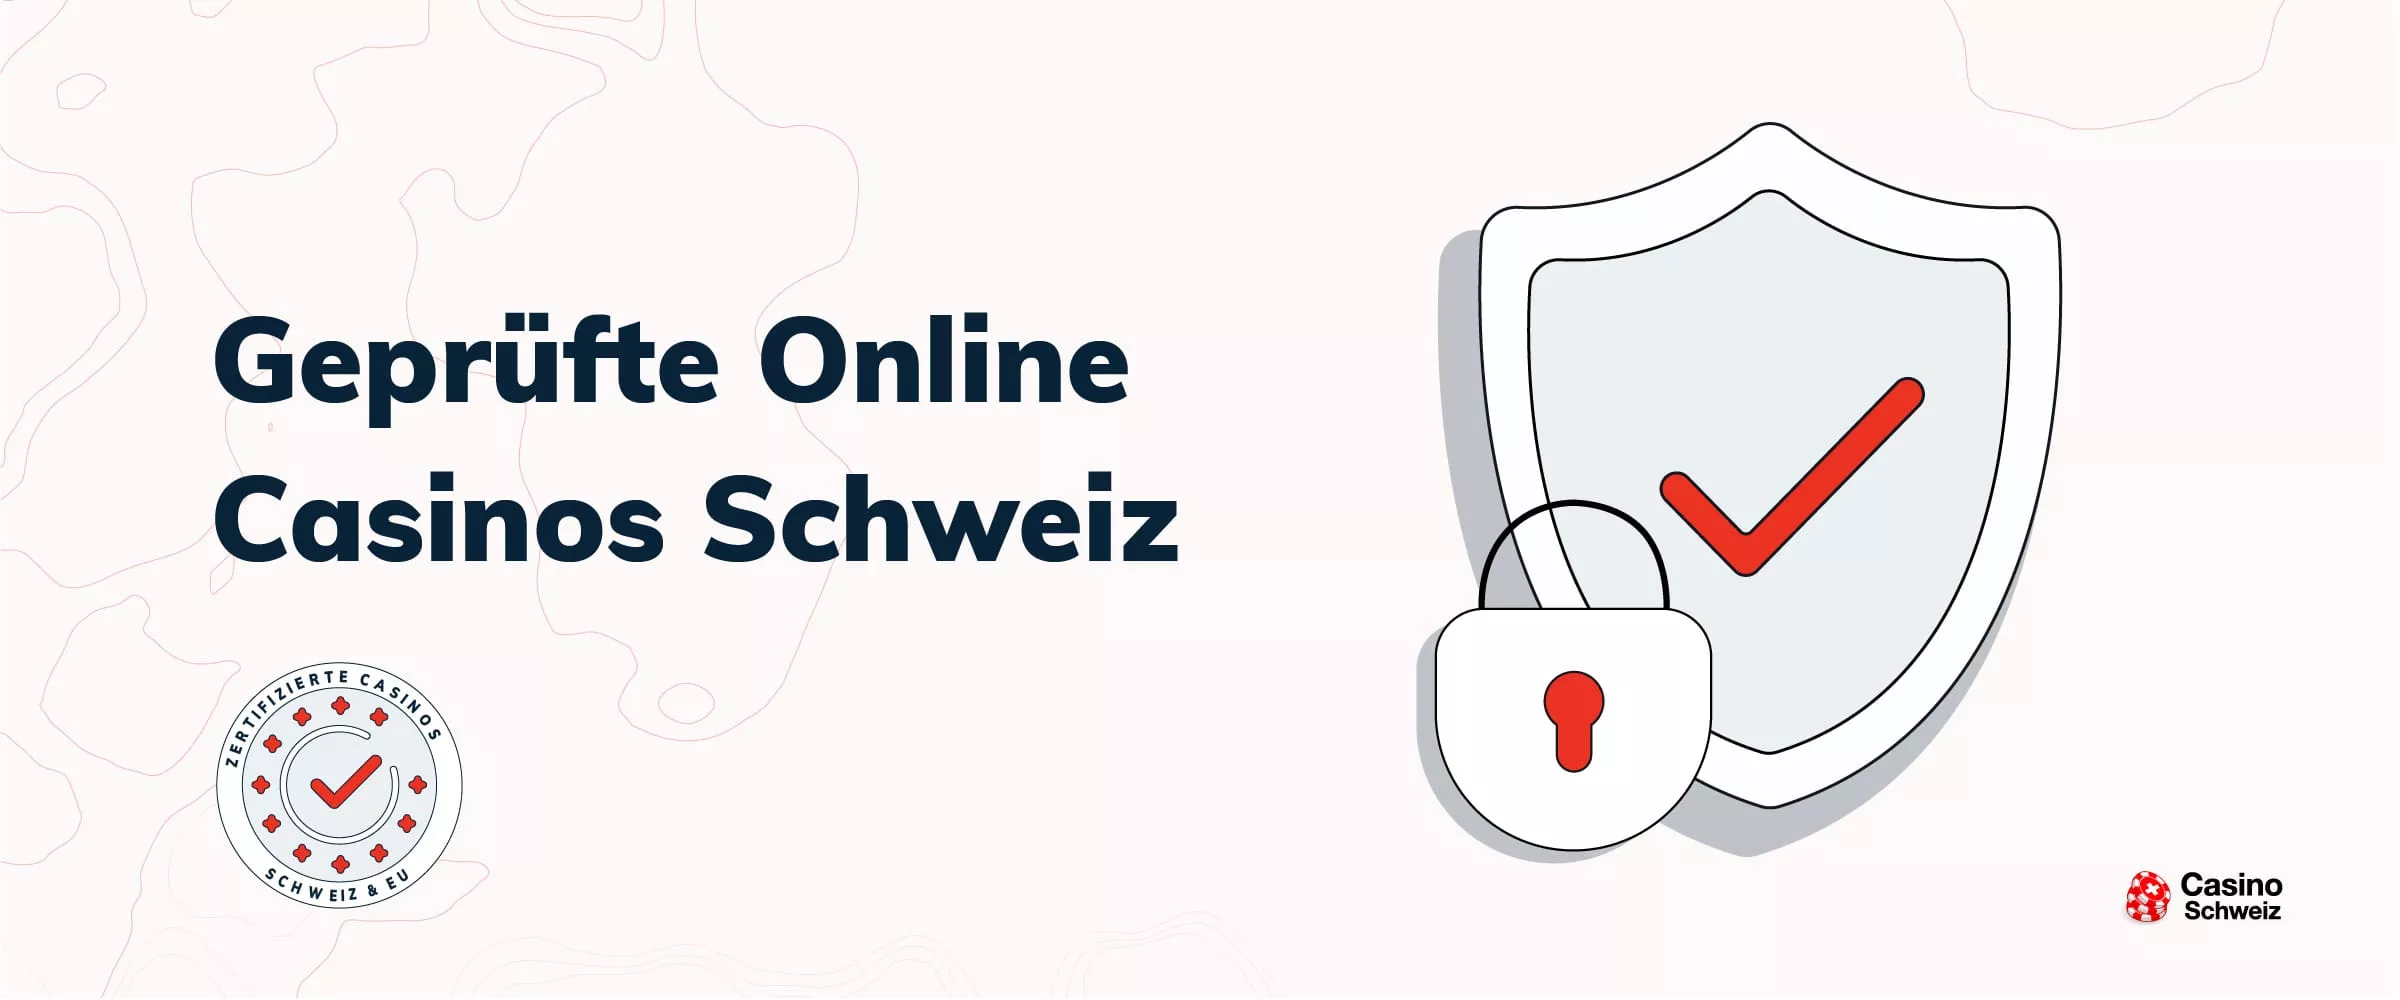 5 umsetzbare Tipps zu Schweizer Online Casinos und Twitter.